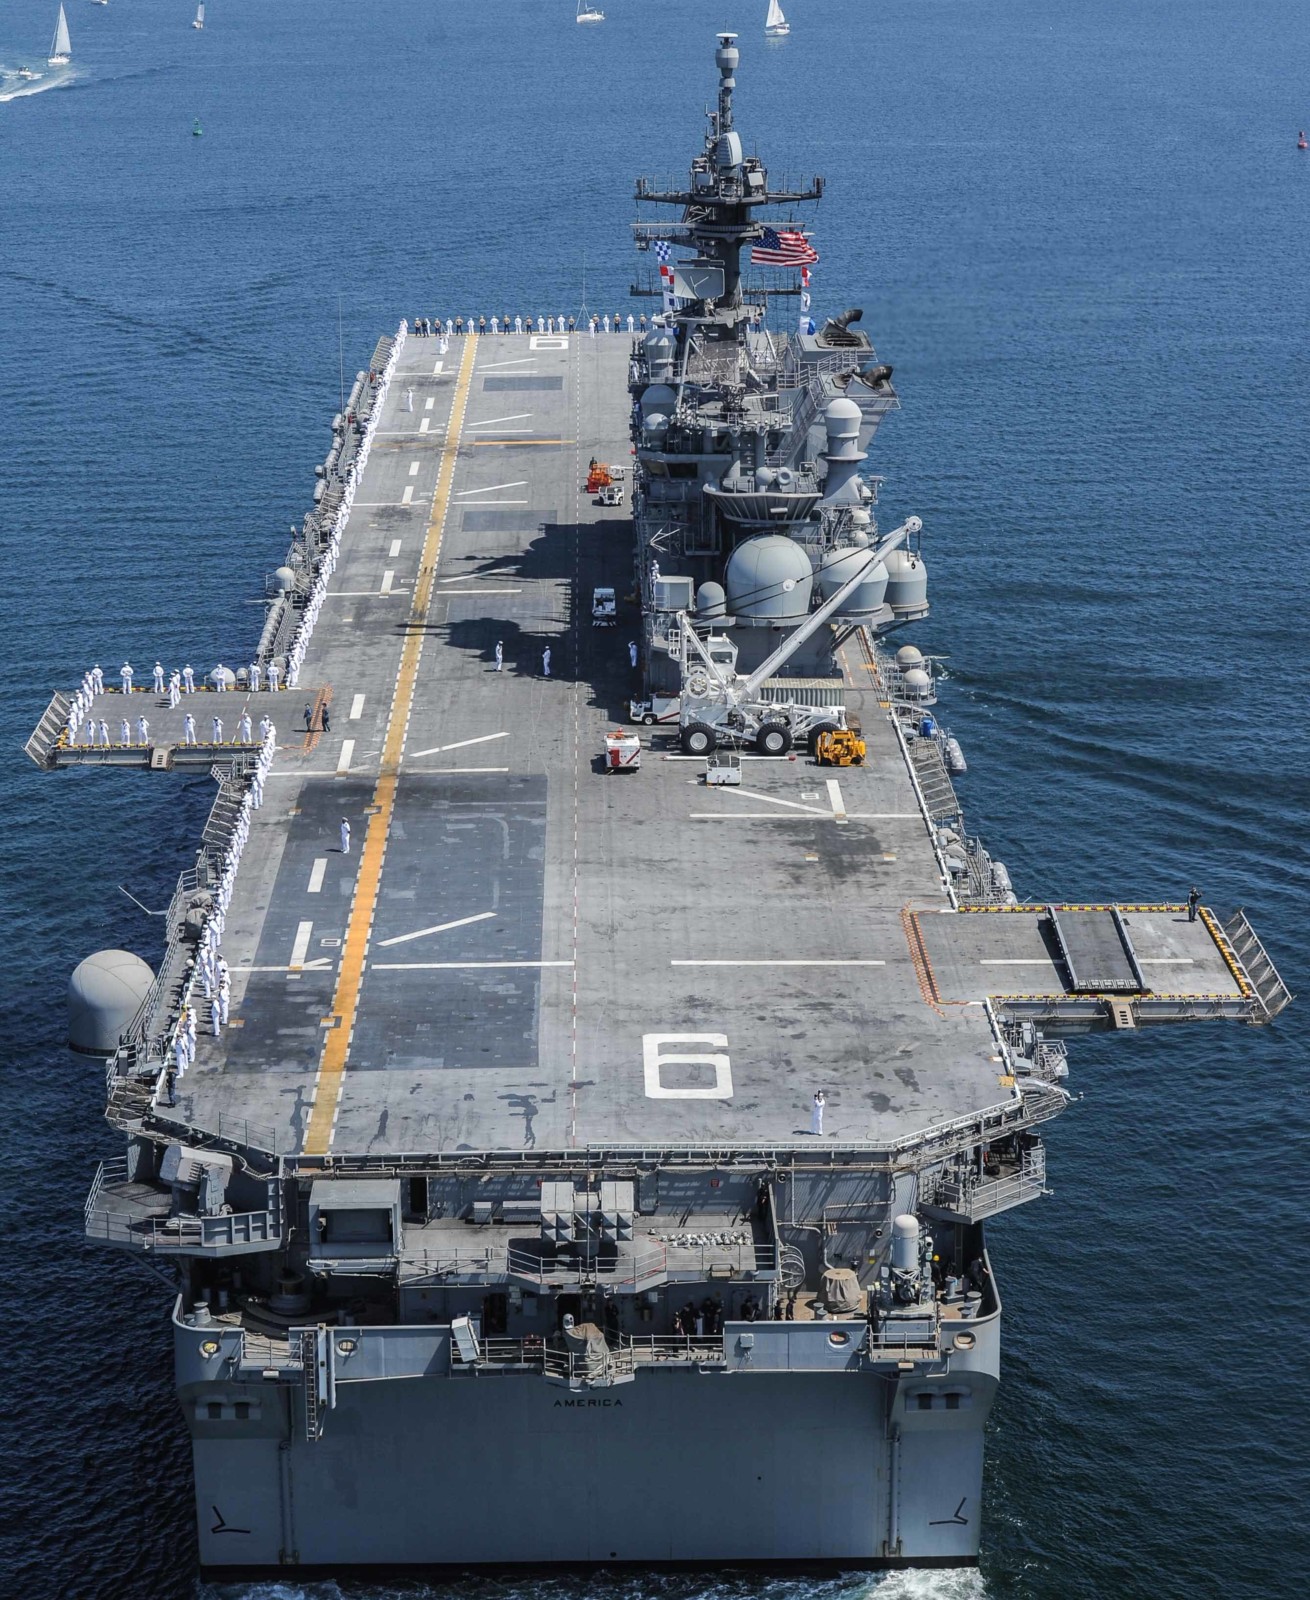 lha-6 uss america amphibious assault ship us navy 59 san diego fleet week 2016